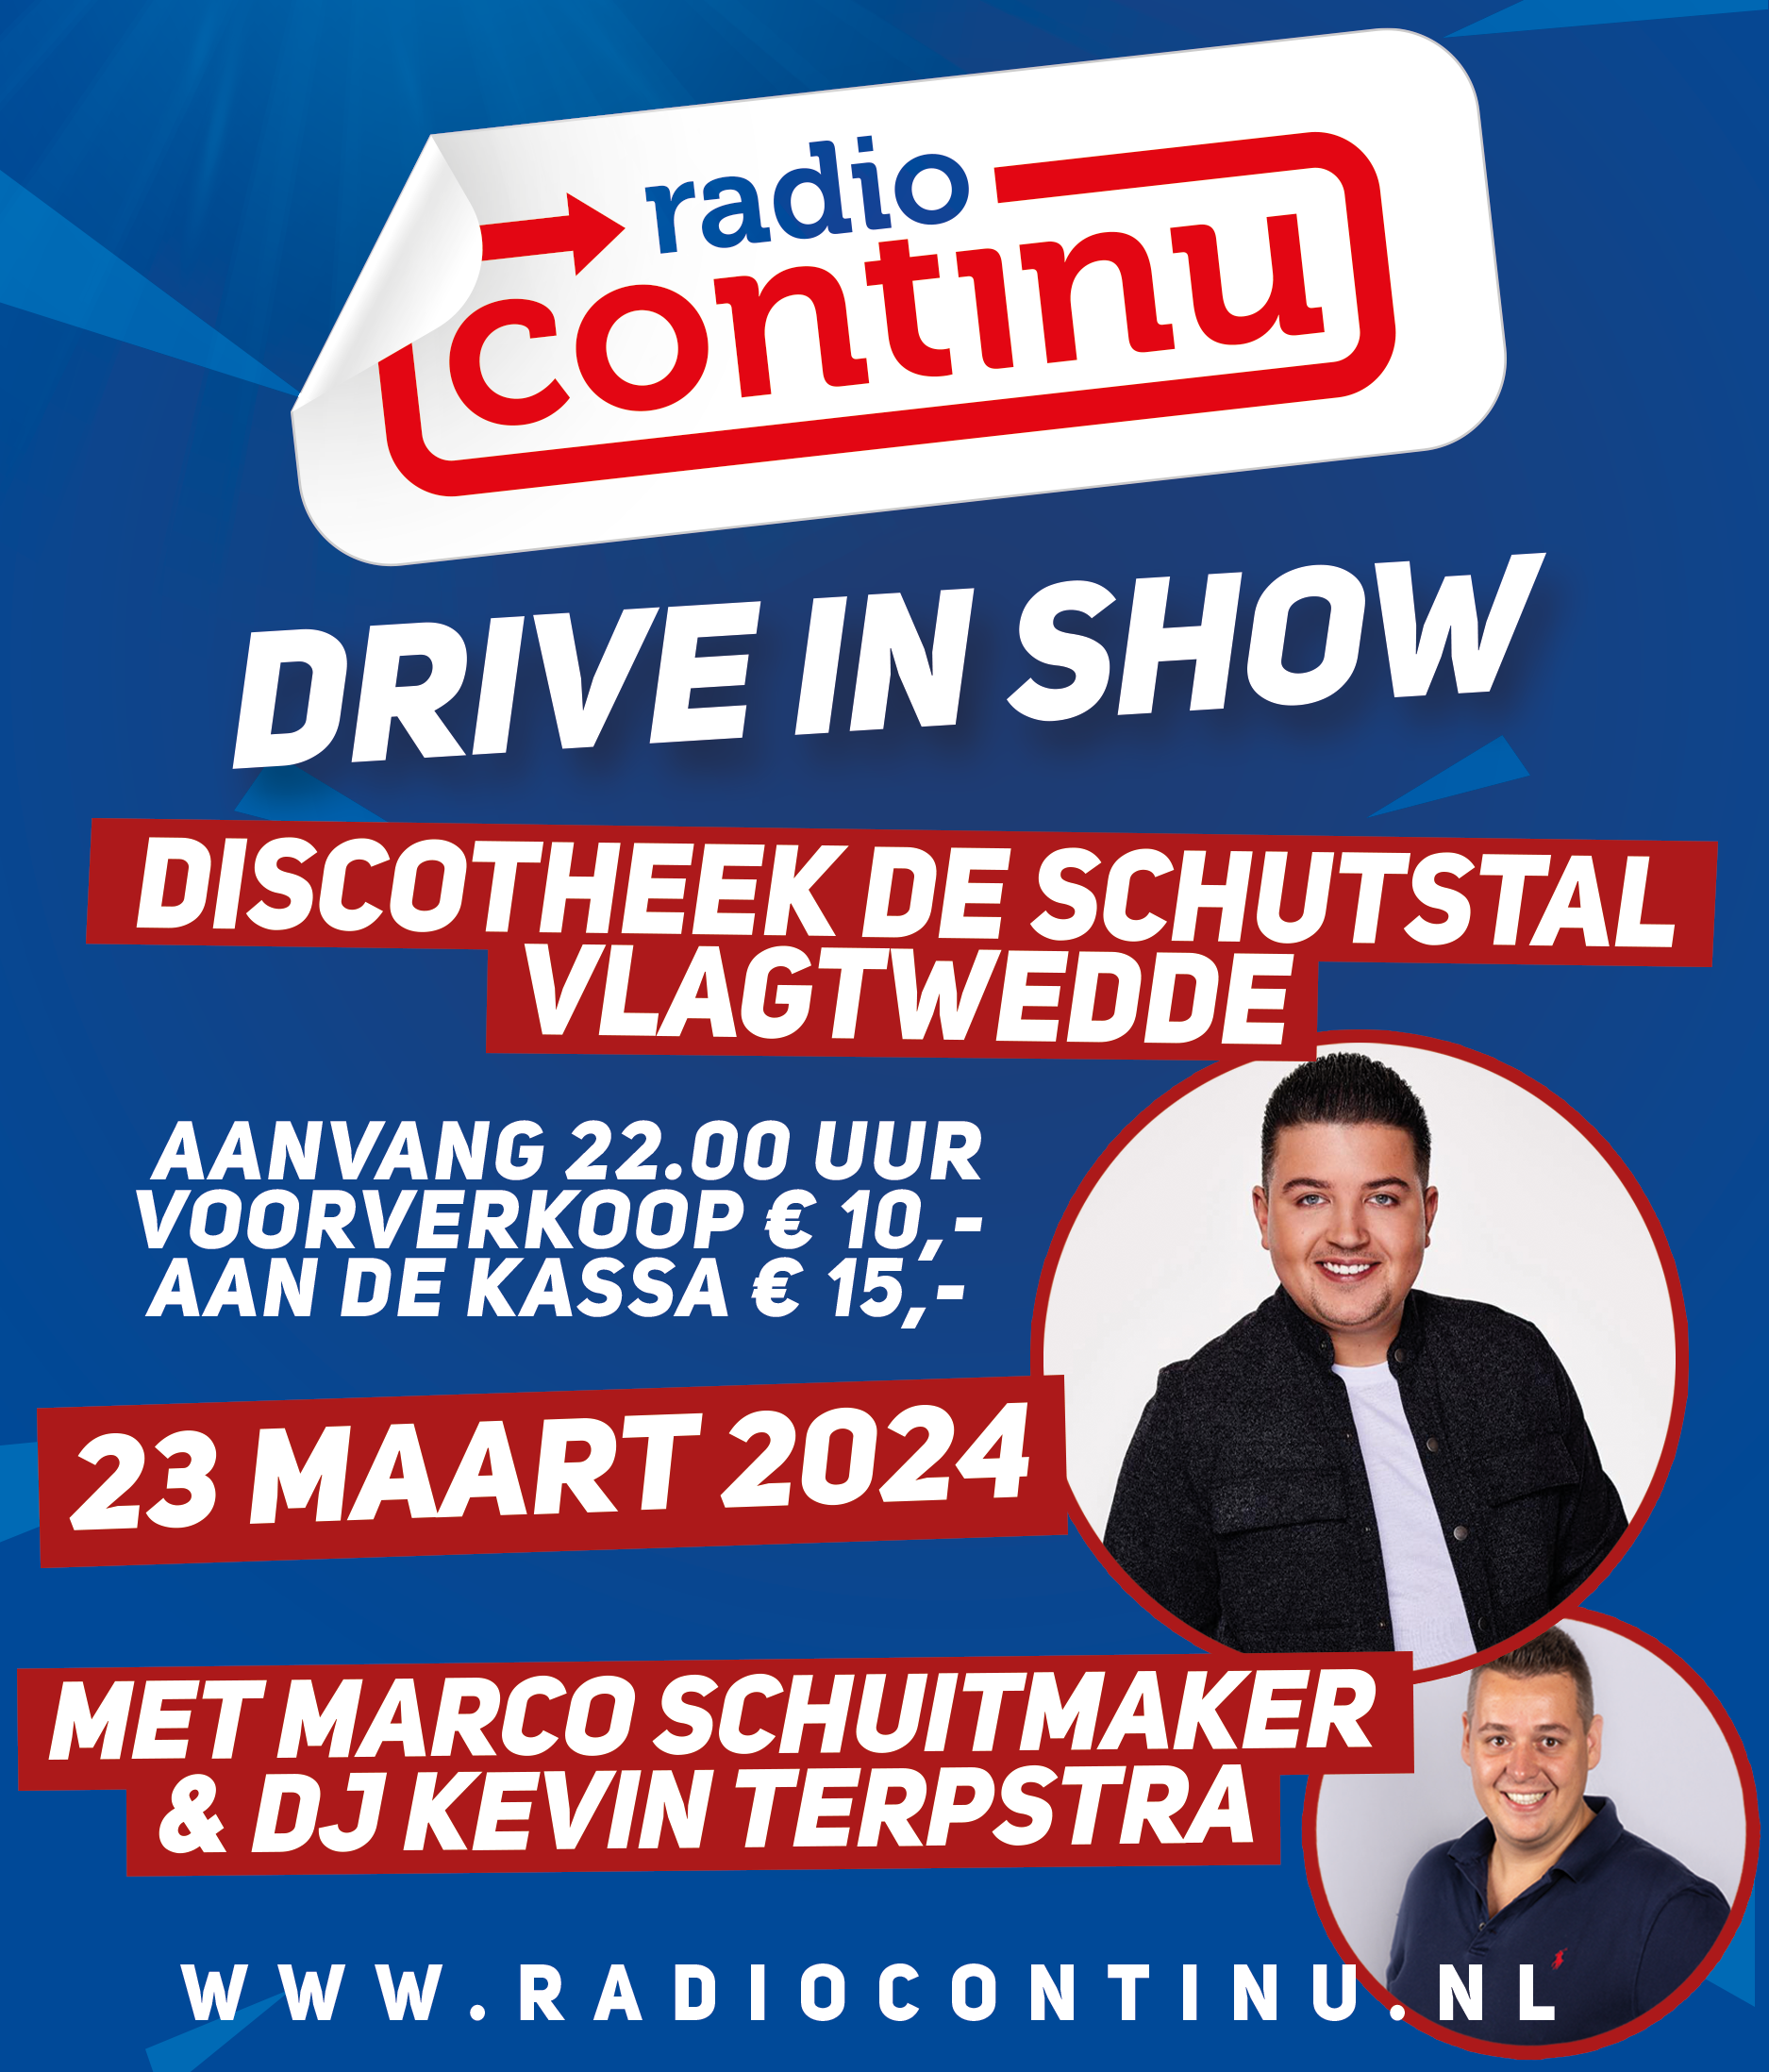 23-03-24: Drive in De Schutstal in Vlagtwedde